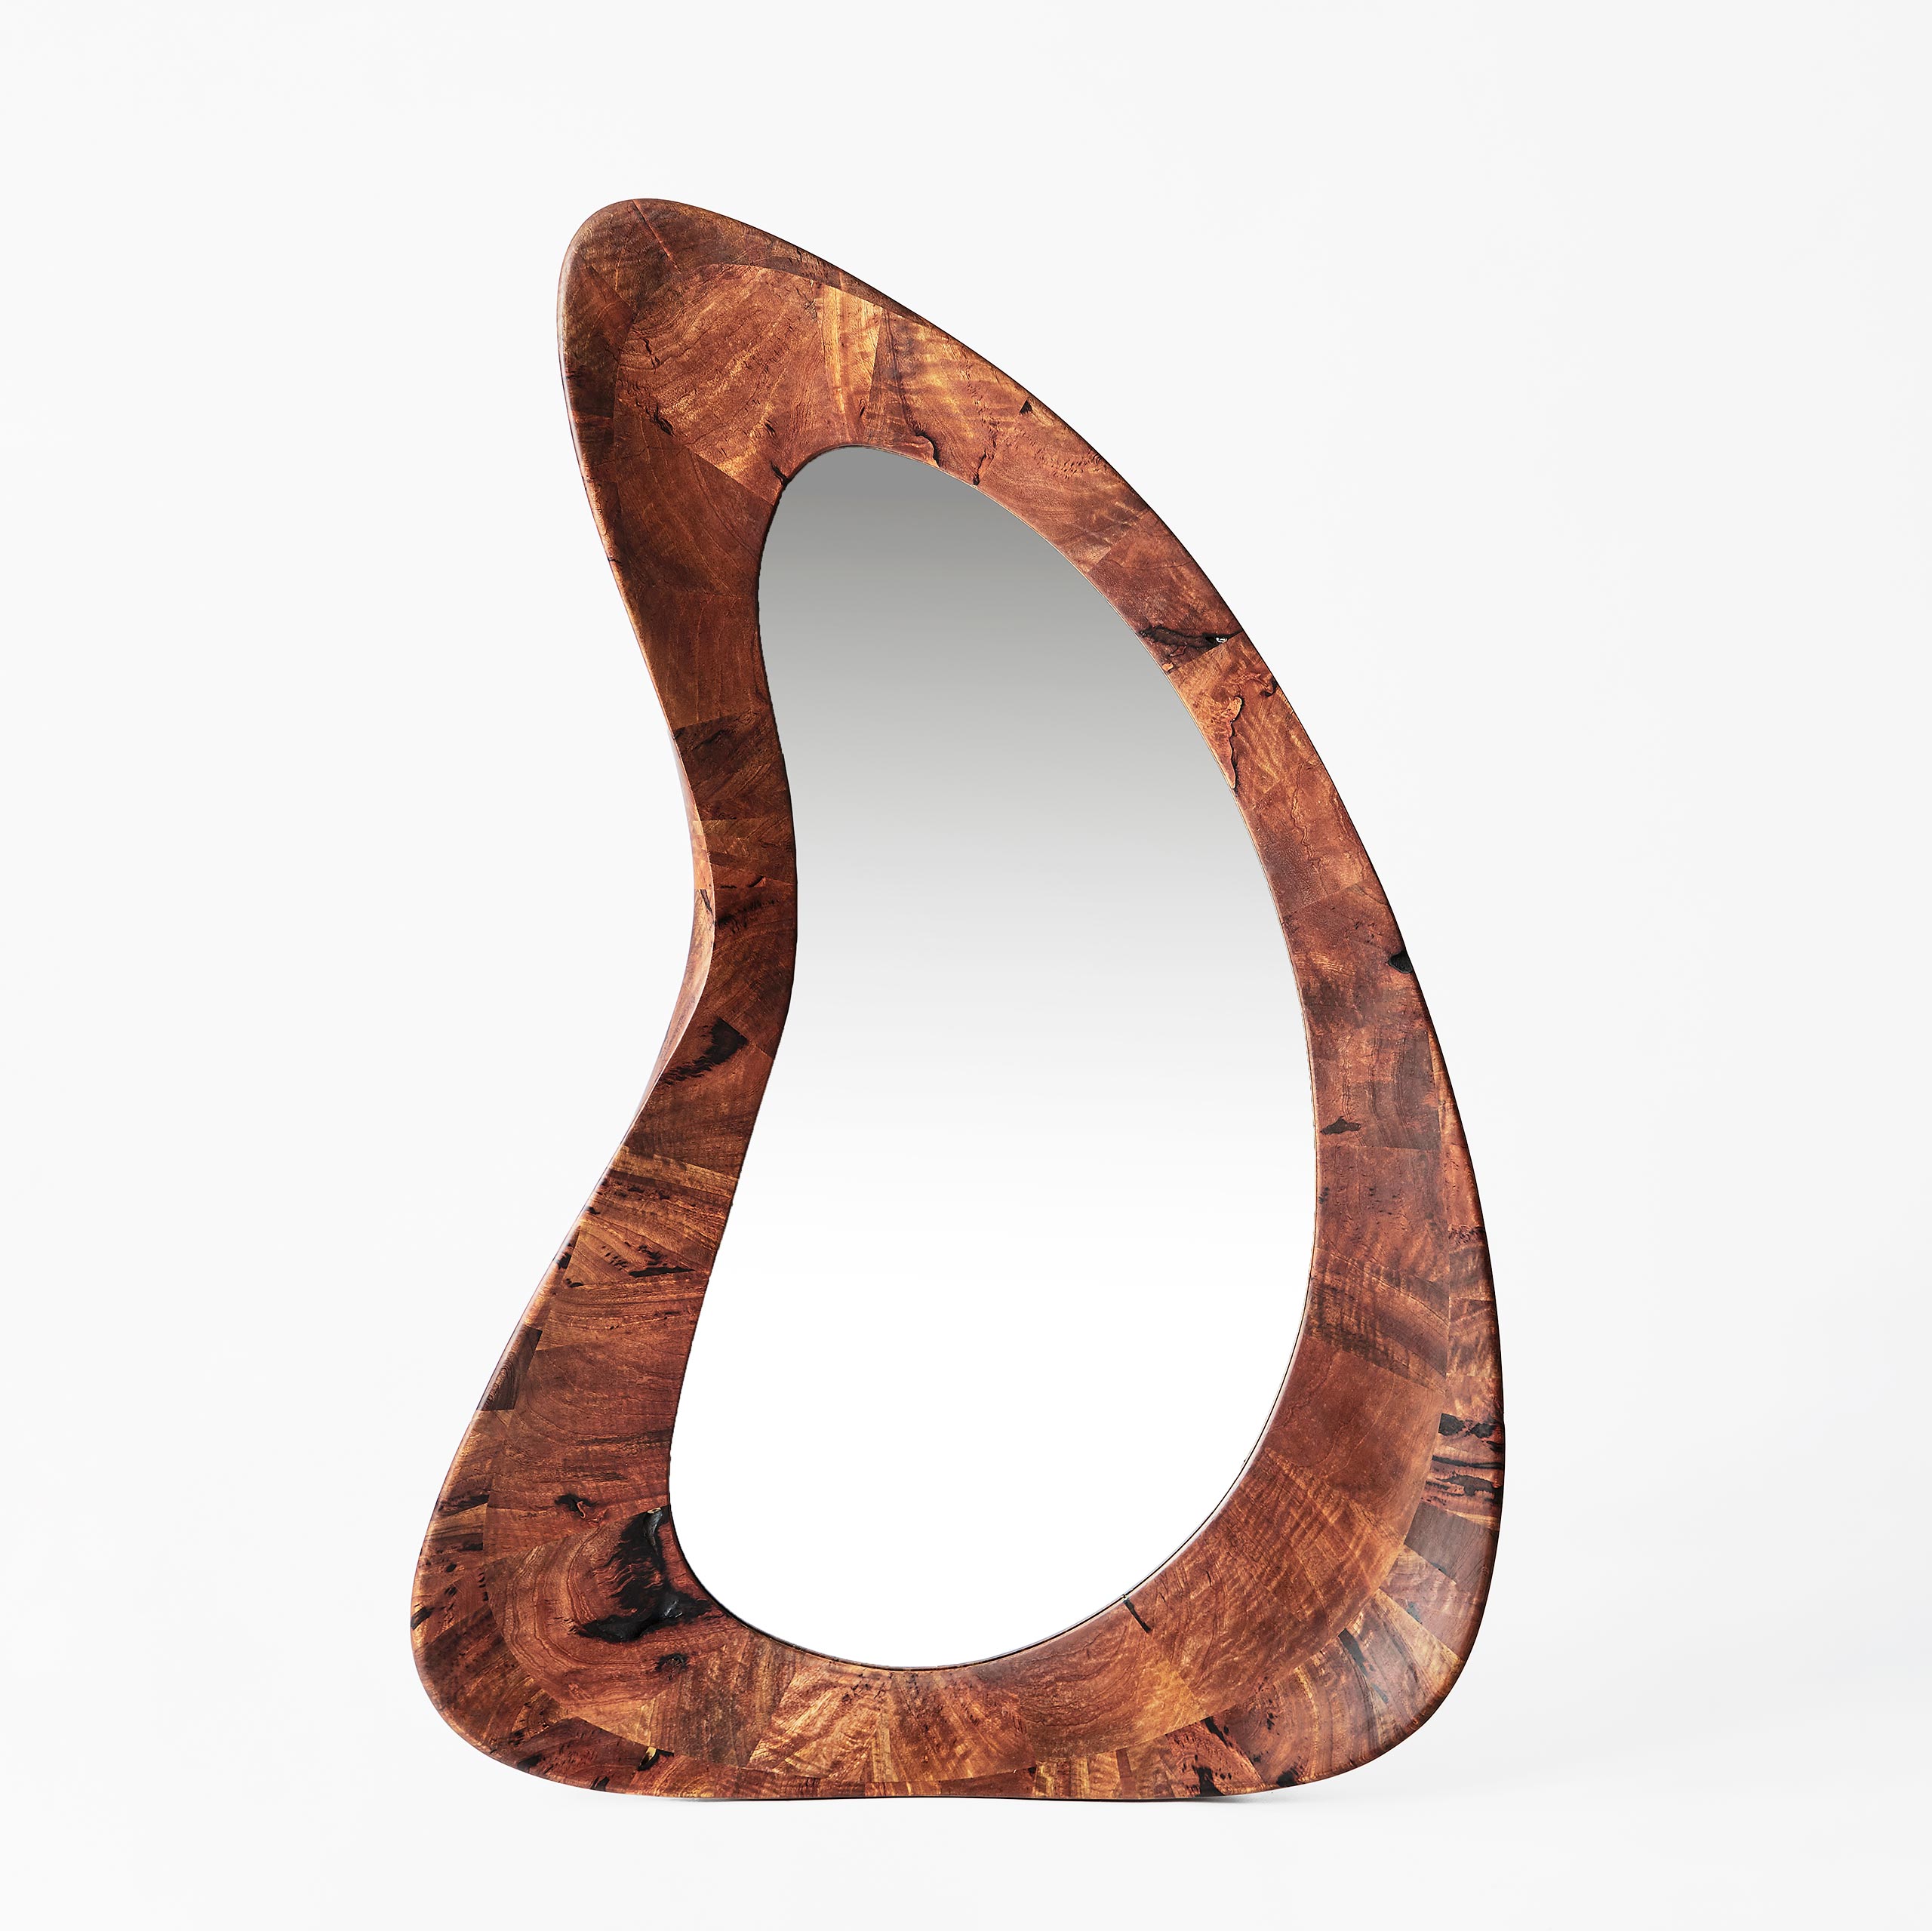 Art - contemporain - galerie d'art - bois - manguier - courbé - sculpture - miroir - Maxime Goléo - design intérieur - sensuel - épuré